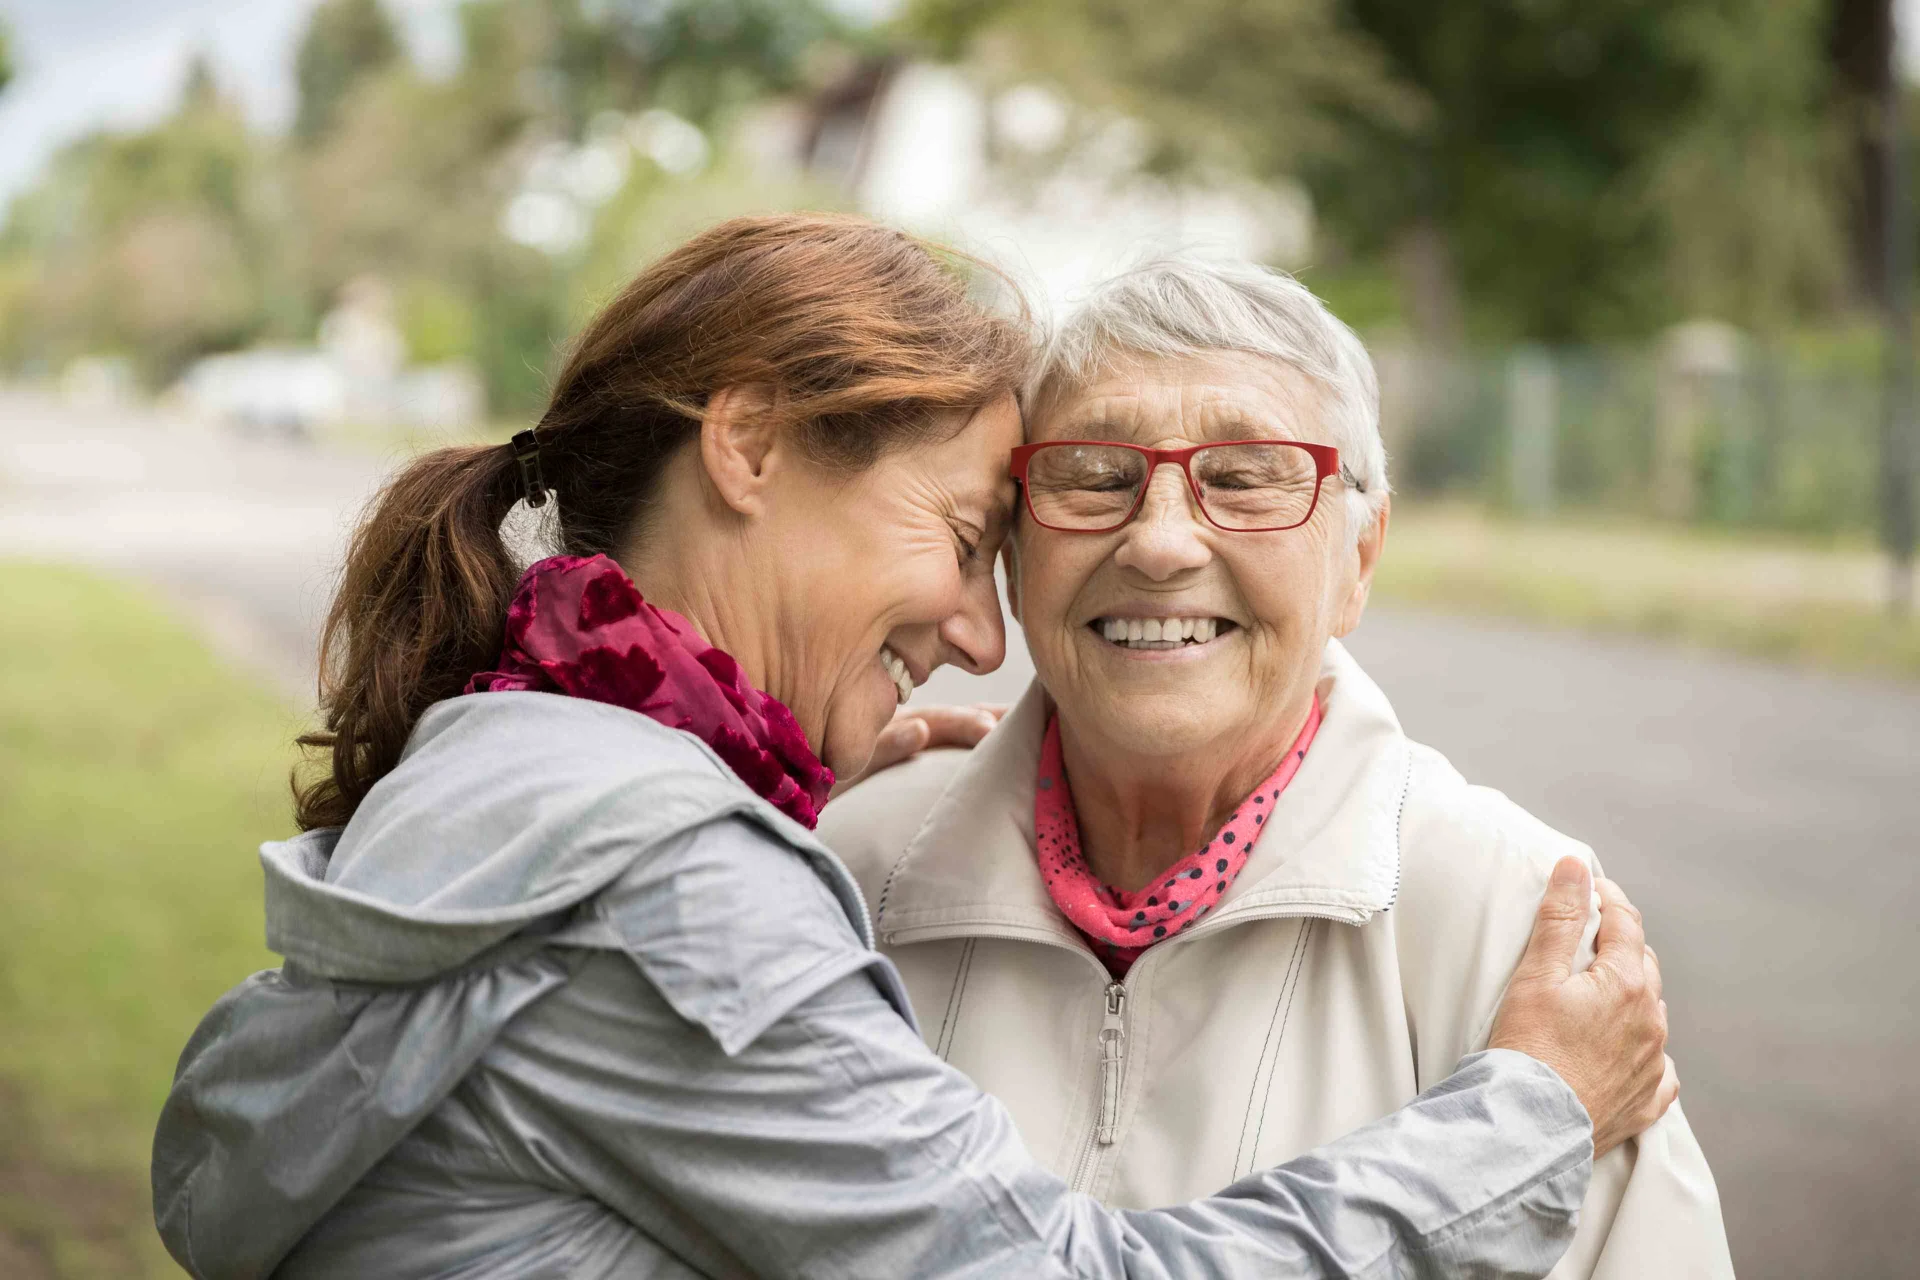 Una donna sorridente abbraccia una donna più anziana, anch'essa sorridente.